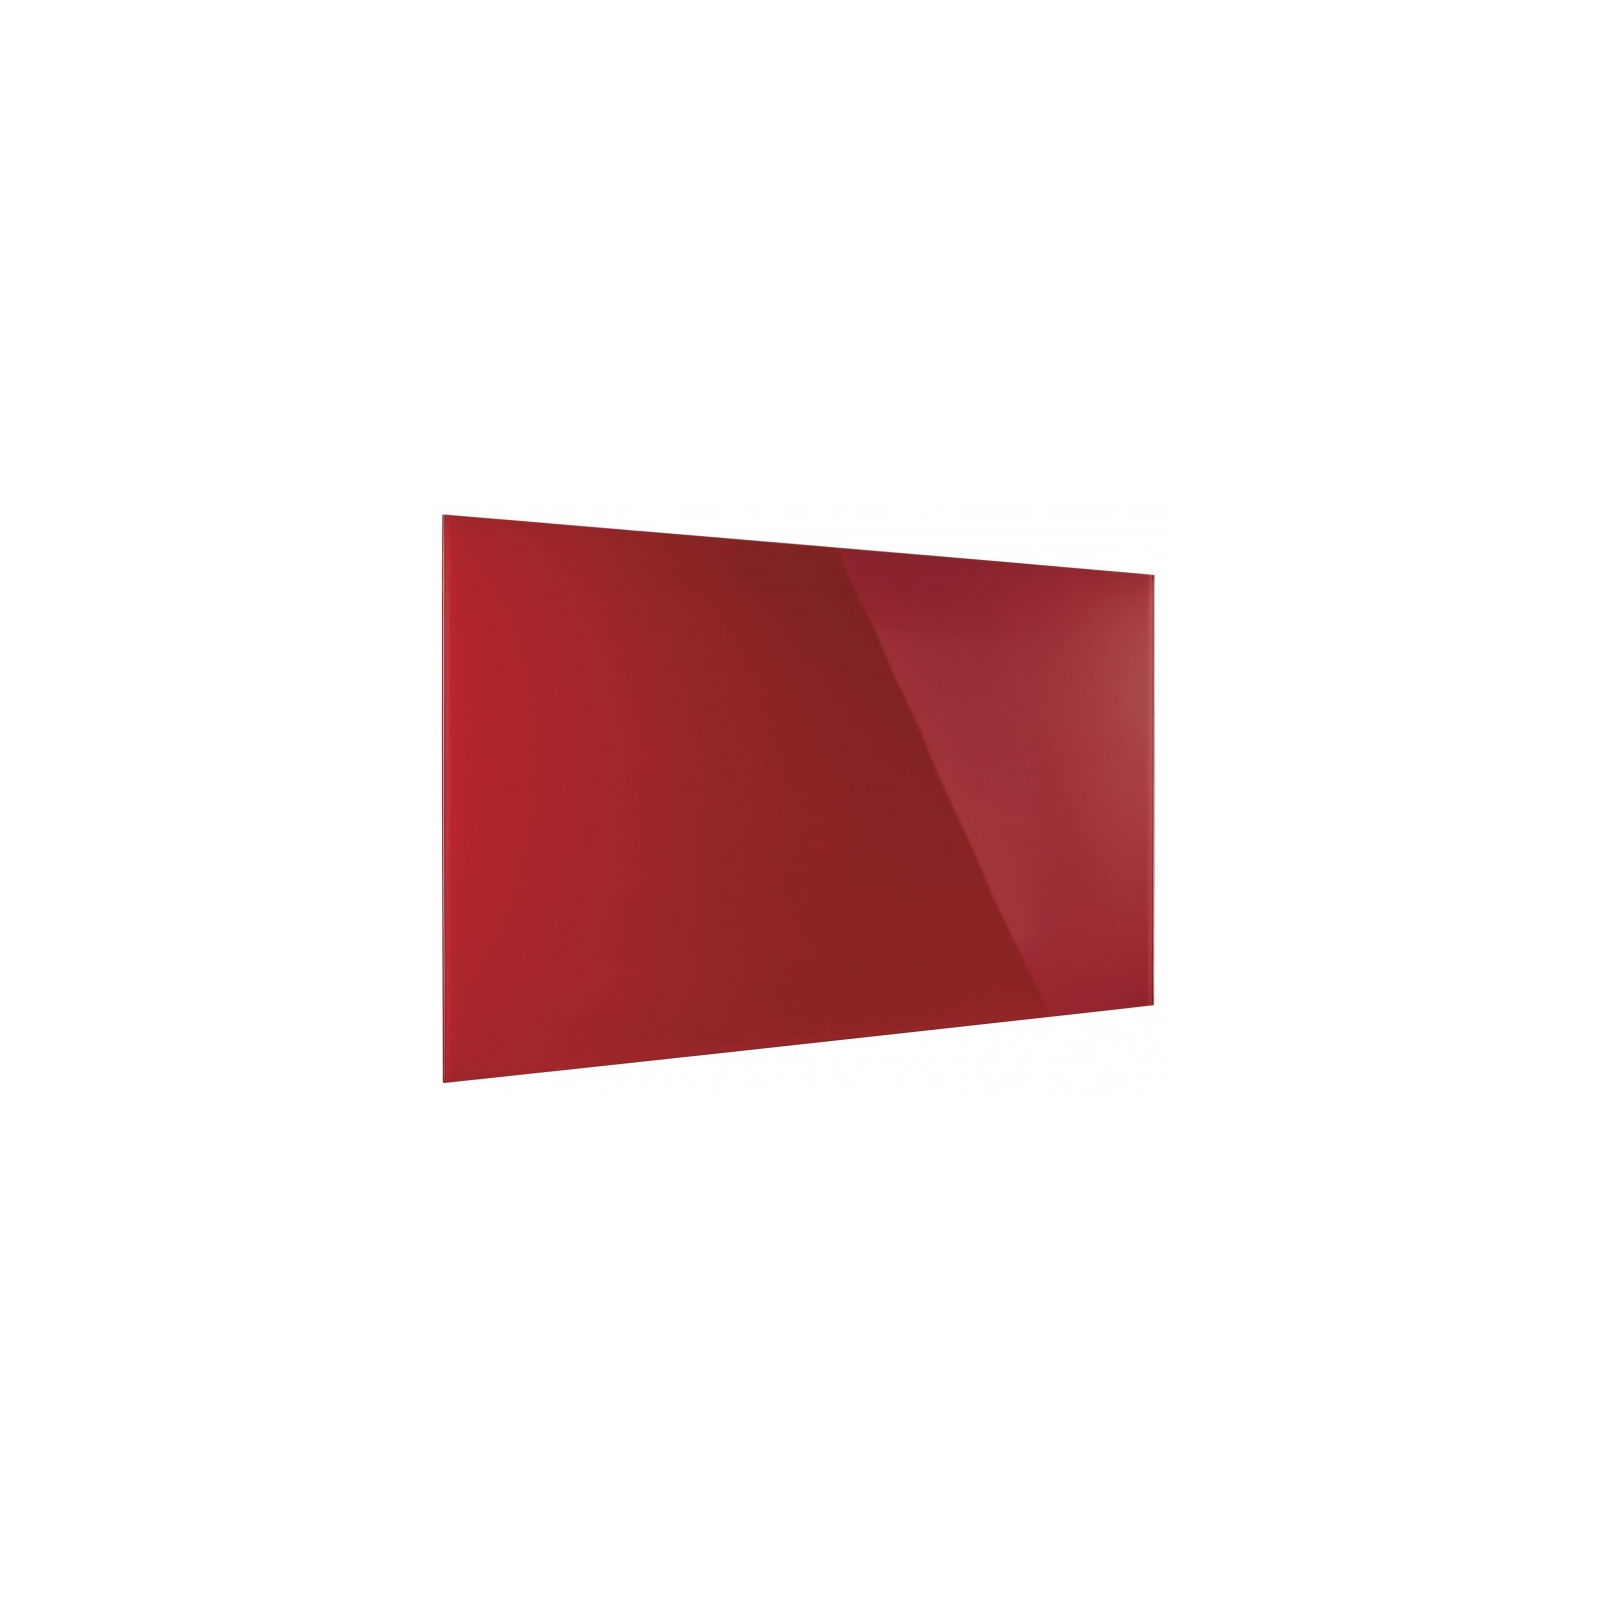 Офисная доска Magnetoplan стеклянная магнитно-маркерная 2000x1000 красная Glassboard-Red (13409006) изображение 2